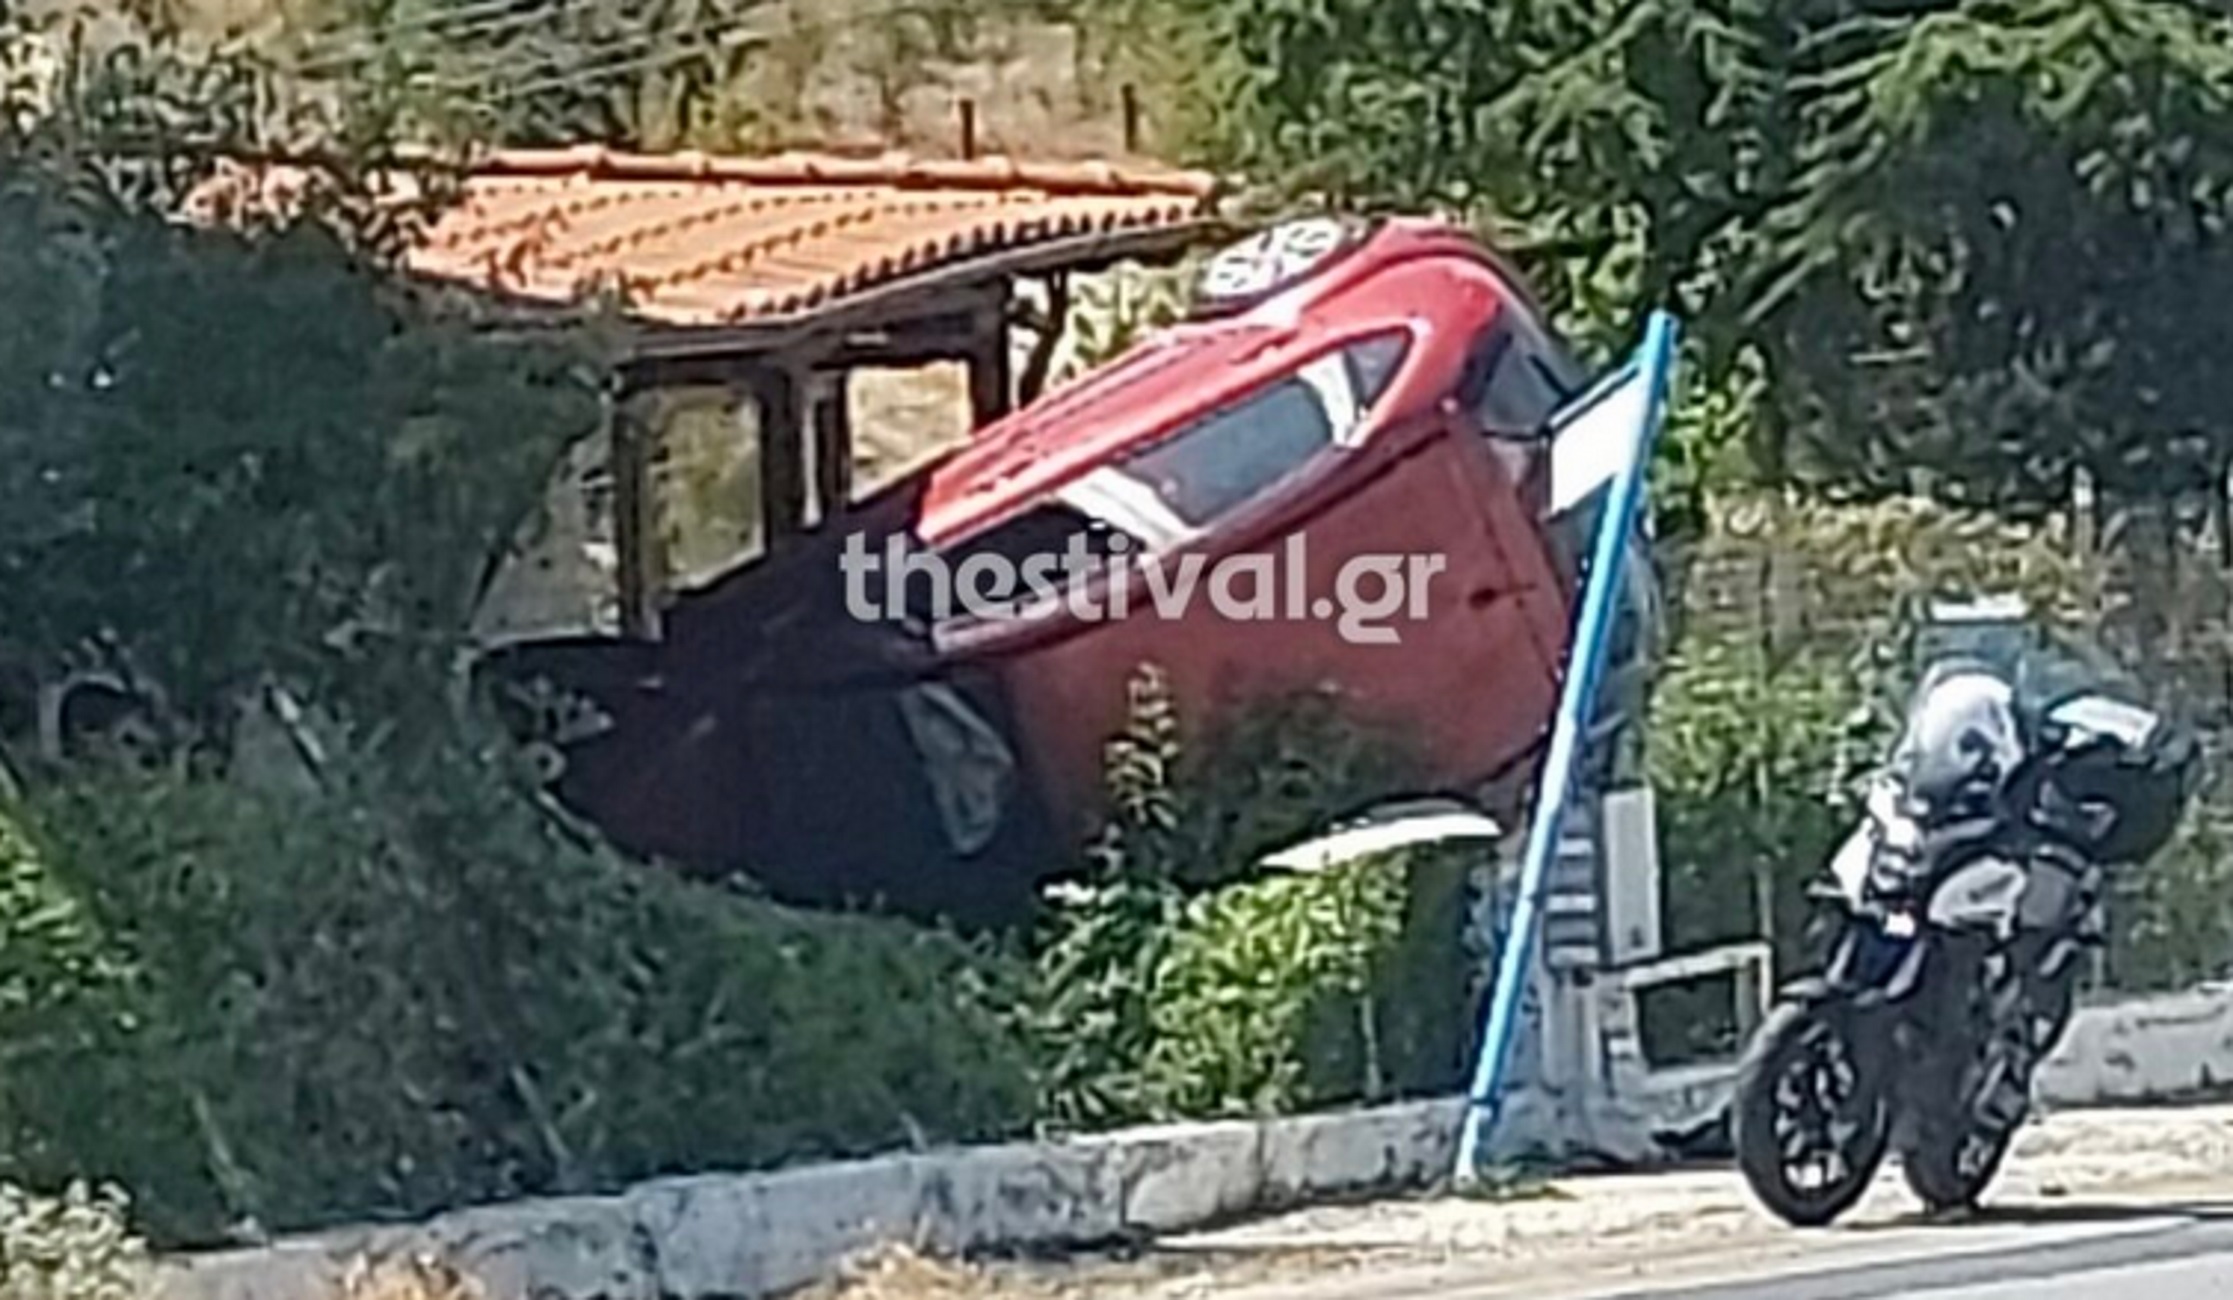 Θεσσαλονίκη: Αυτοκίνητο κατέληξε σε αυλή σπιτιού στο Φίλυρο – Αυτοψία μετά το ατύχημα